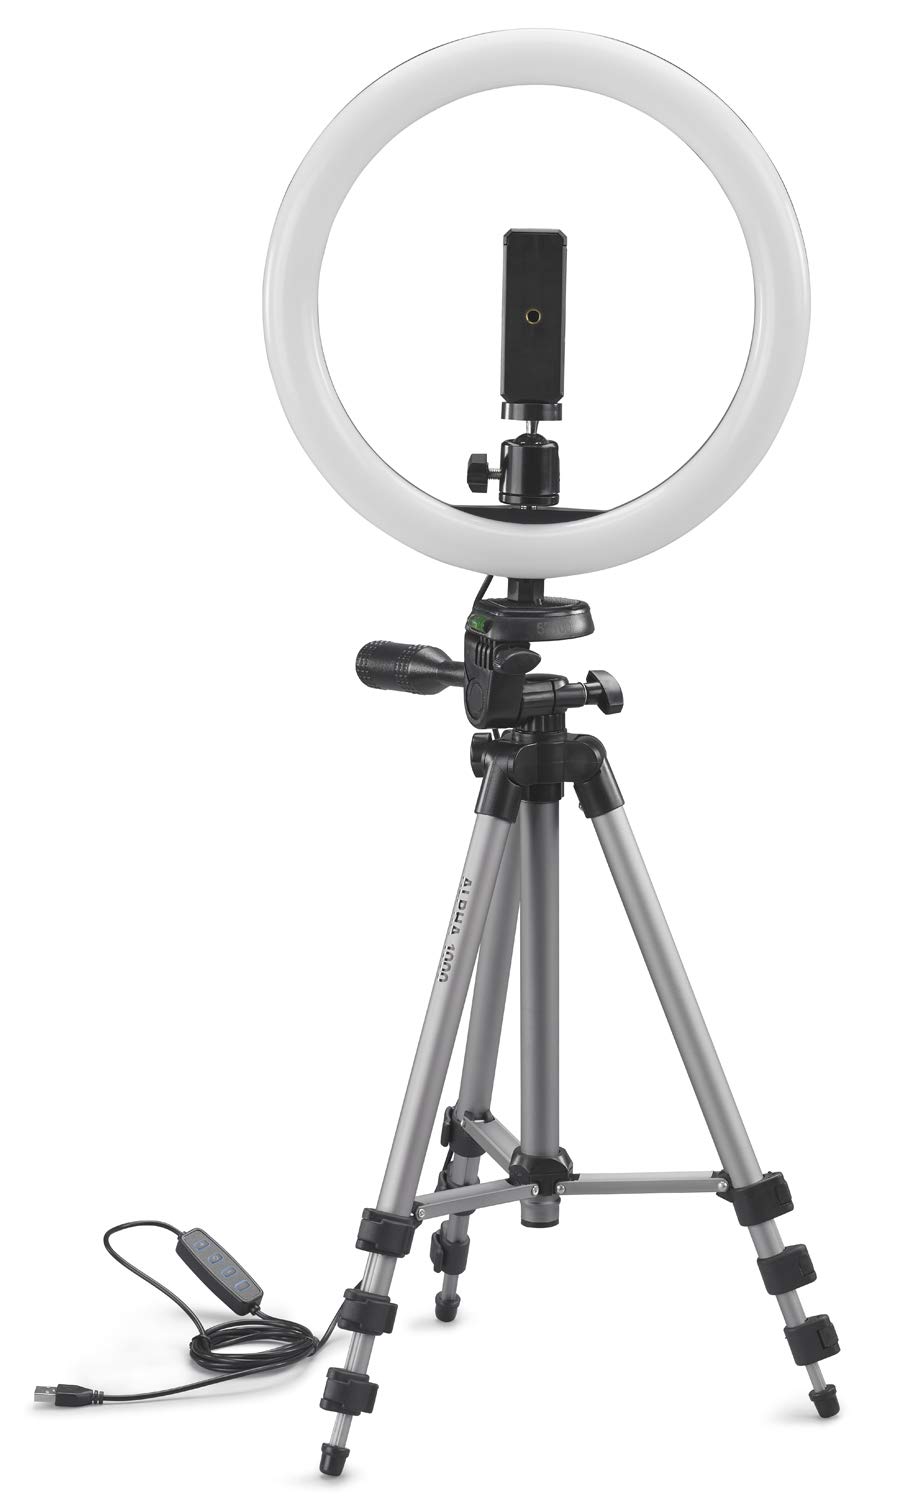 CULLMANN - 52103 - Alpha 1000 Stativ Vlogging Kit BT m. LED-Ringlicht und Bluetooth-Auslöser (Auszugshöhe 134 cm, Packmaß 37 cm, mit 3-Wege-Kopf, max. Tragkraft 1 kg, Gewicht 750 g), schwarz